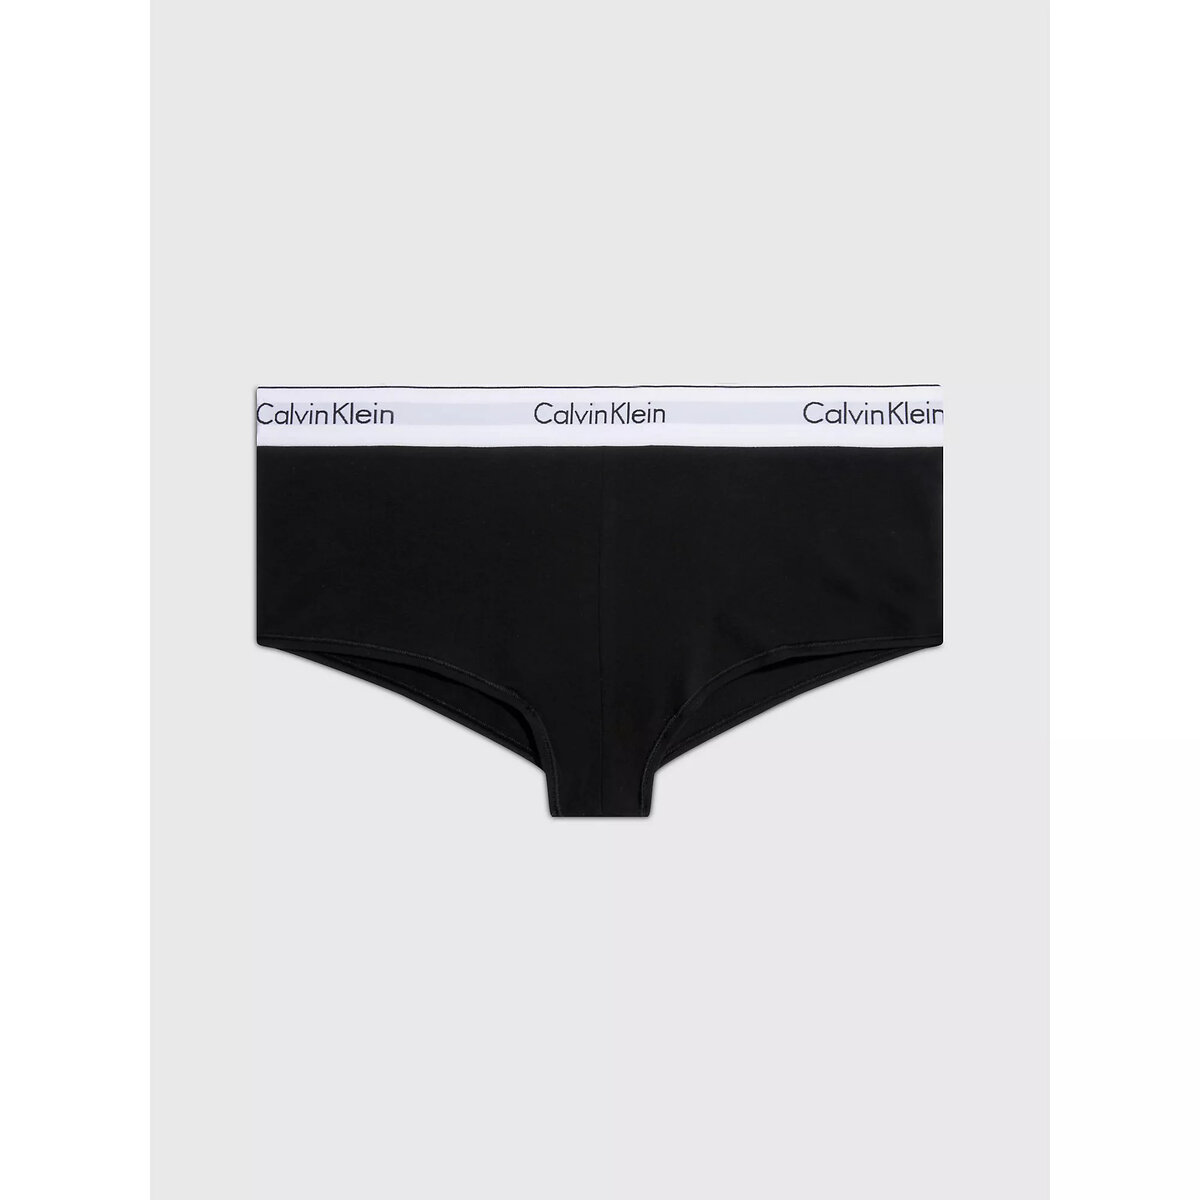 Ženské pohodlné kalhotky - Calvin Klein i652_0000F3788E001004